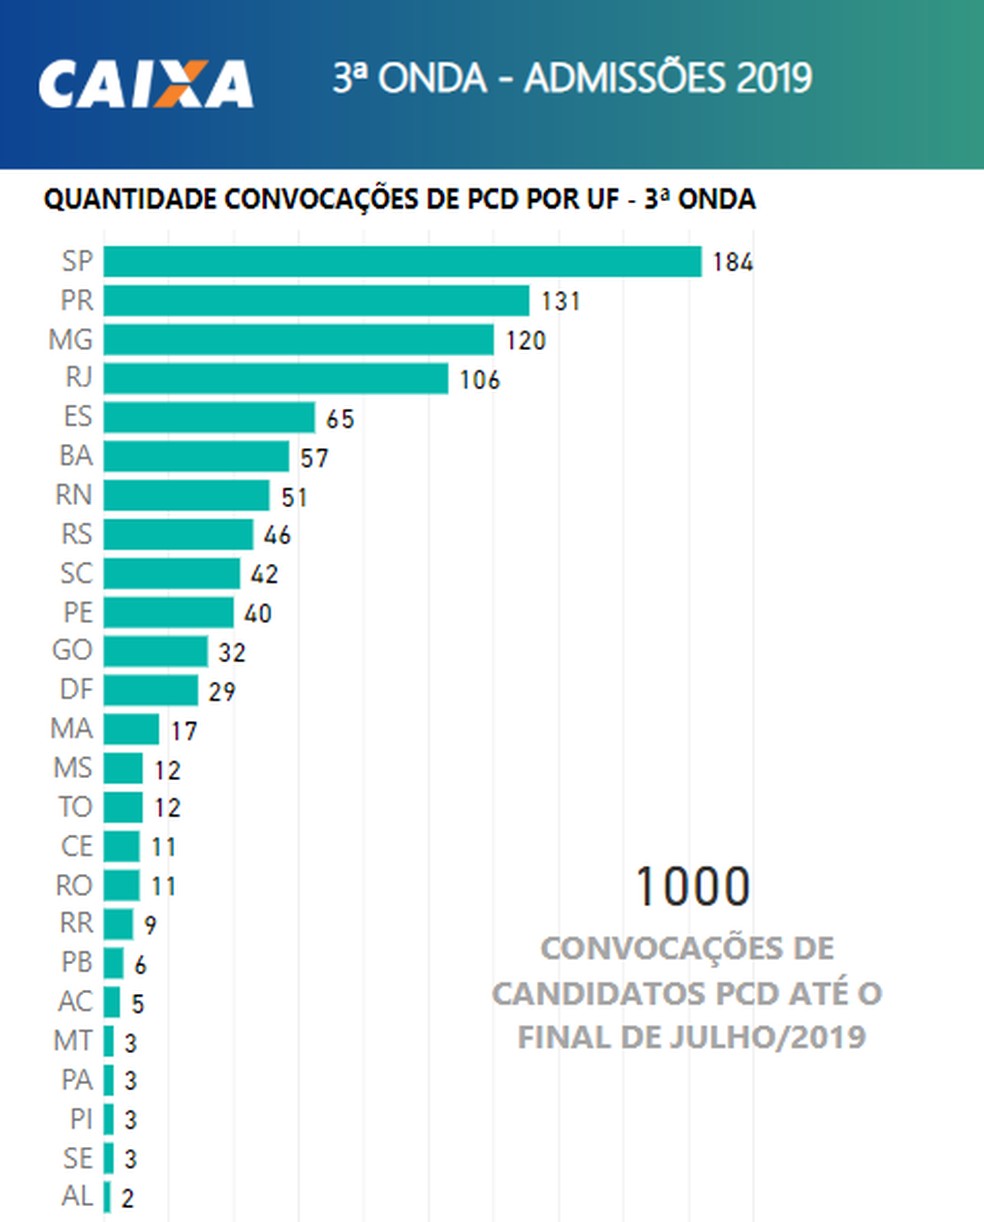 Caixa Convoca 1 Mil Candidatos Aprovados Em Concurso De 2014 Empreenda Valor Investe